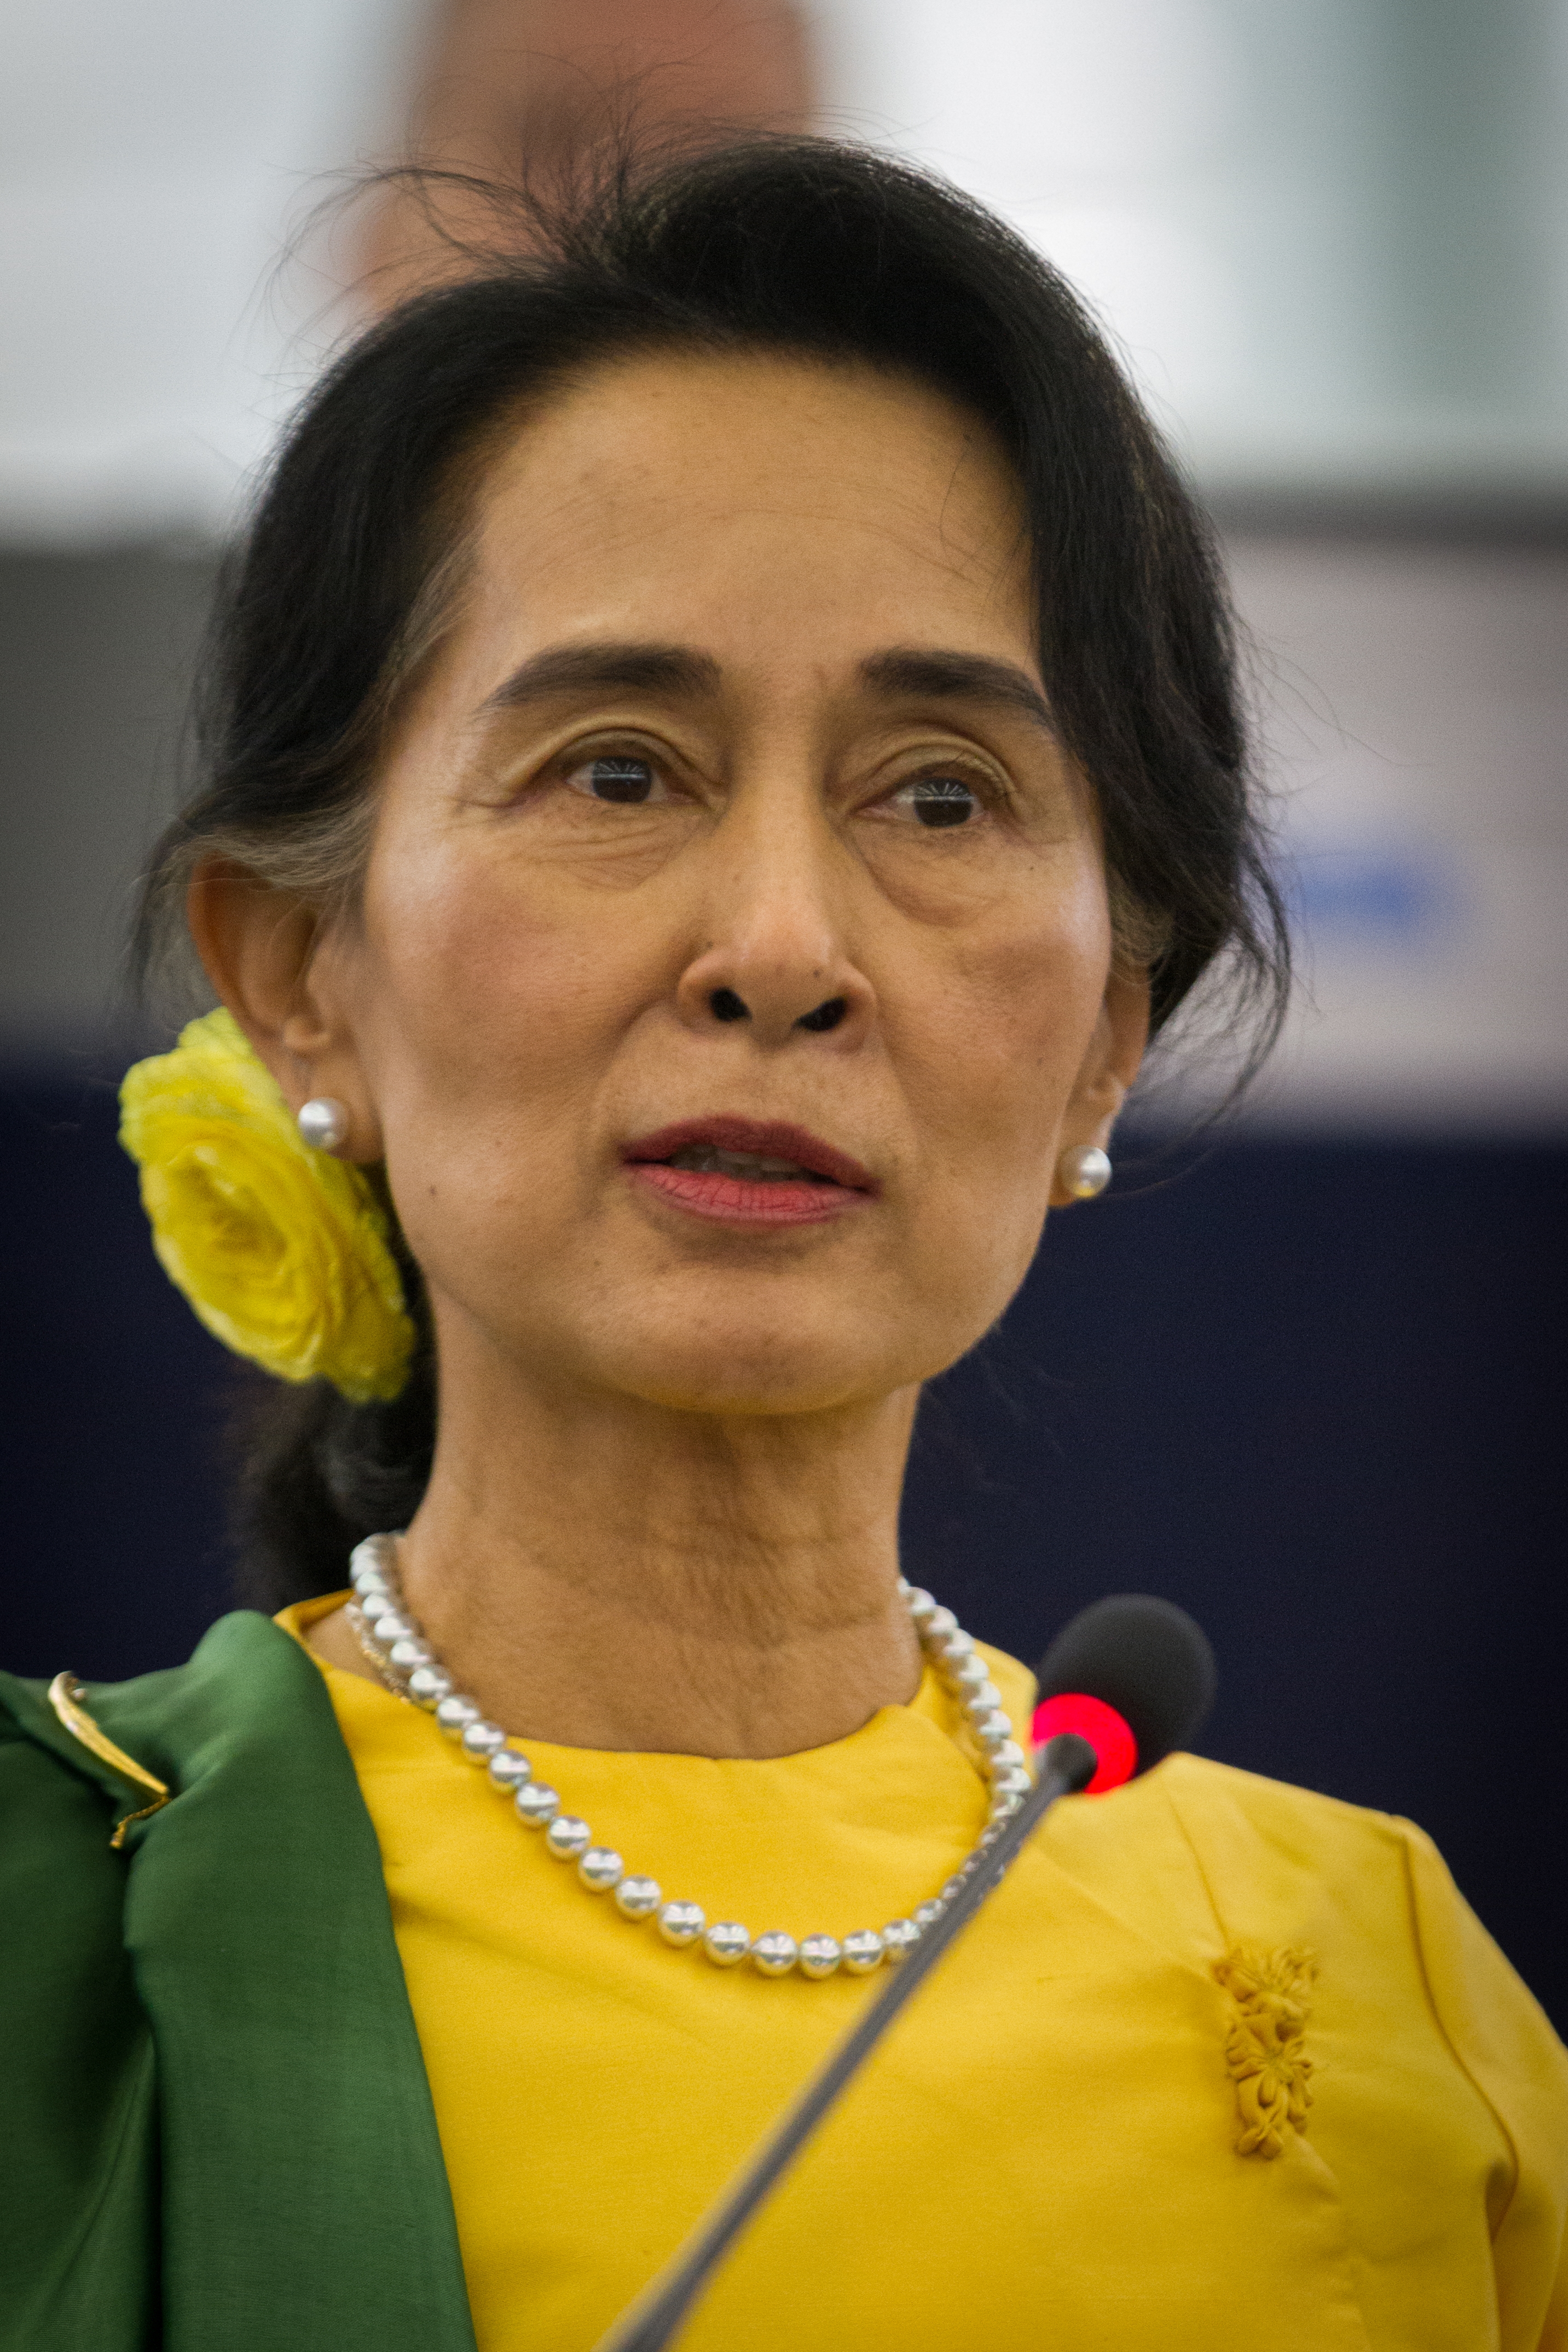 auteur Aung San Suu Kyi de la citation En Birmanie, en vertu de la Constitution actuelle, l'armée peut toujours reprendre toutes les parties du gouvernement s'ils pensent que cela est nécessaire. Ainsi, jusqu'à ce que l'armée ne sorte clairement et régulièrement en faveur du processus démocratique, nous ne pouvons pas dire que c'est irréversible. Mais je ne pense pas que nous ayons besoin de craindre trop un renversement non plus.